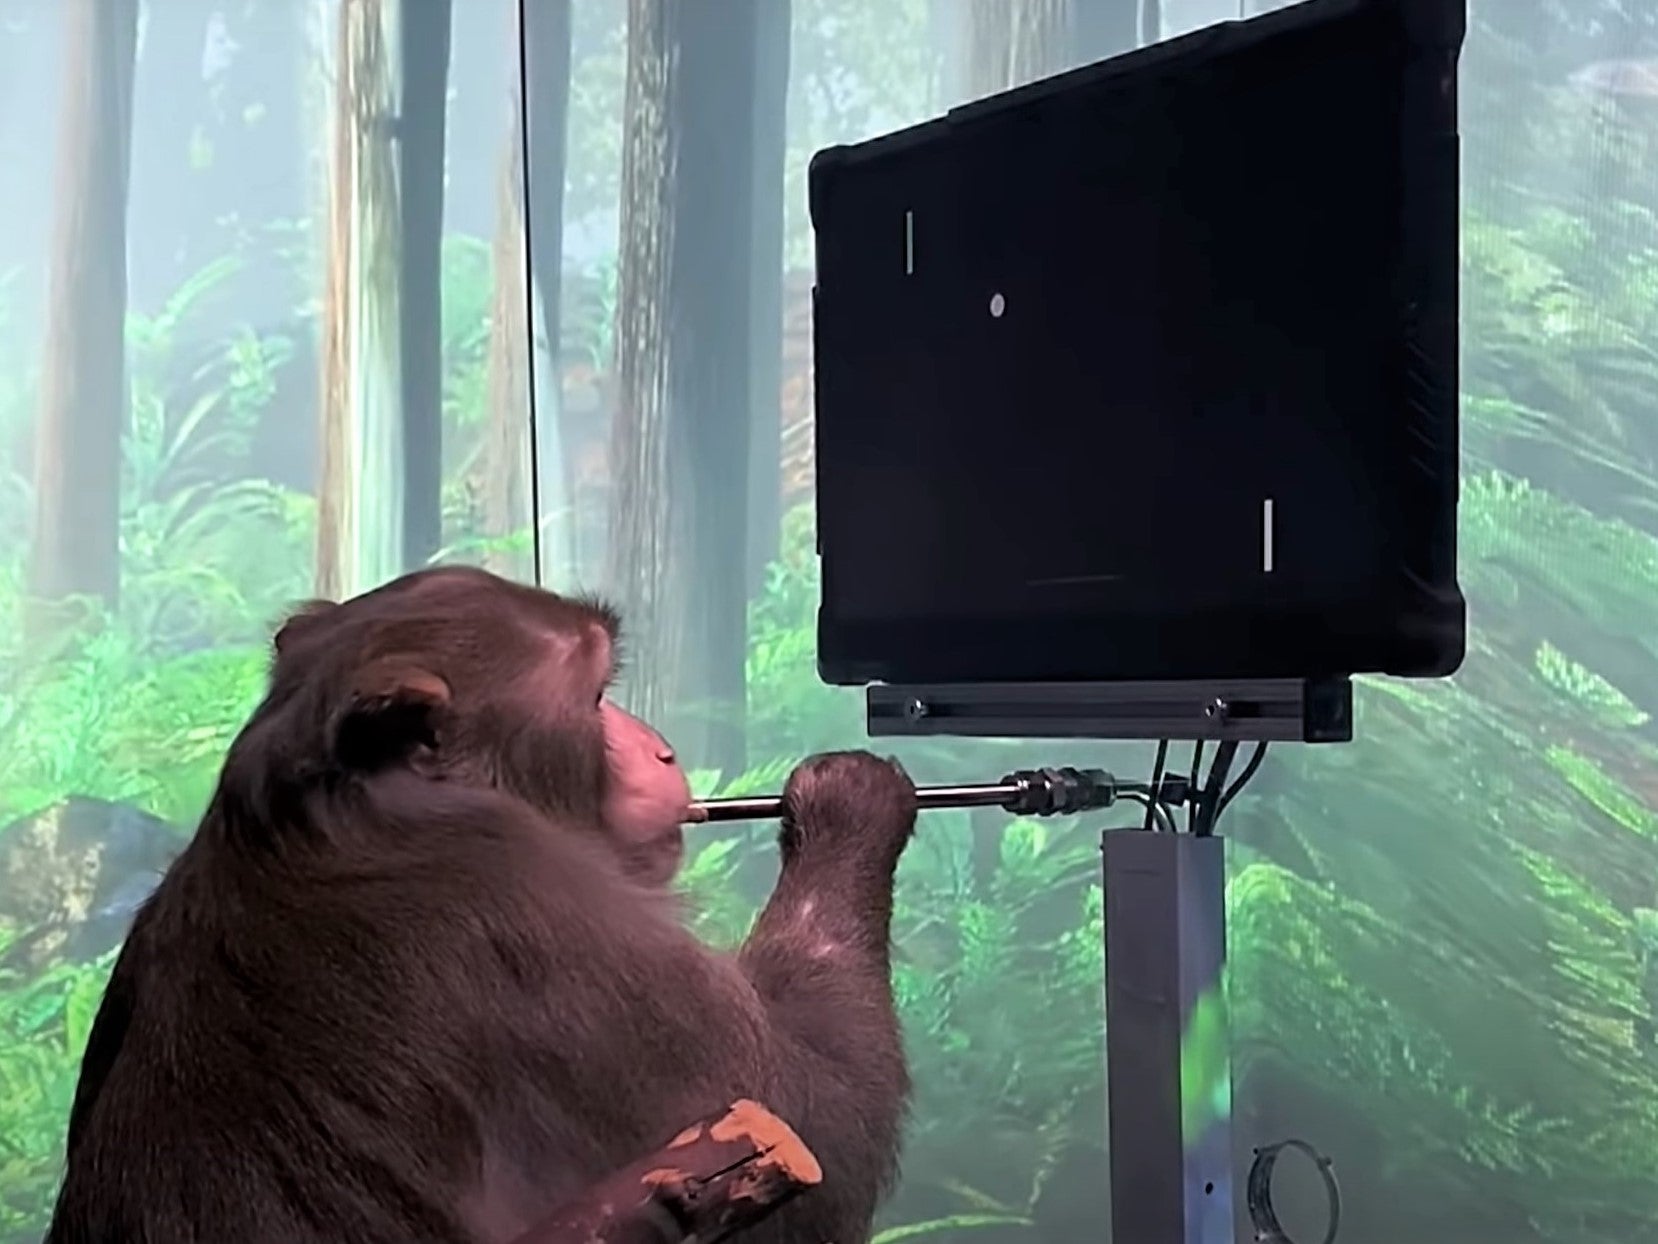 El mono de Neuralink fue capaz de mover la pala virtual de Pong con solo pensarlo